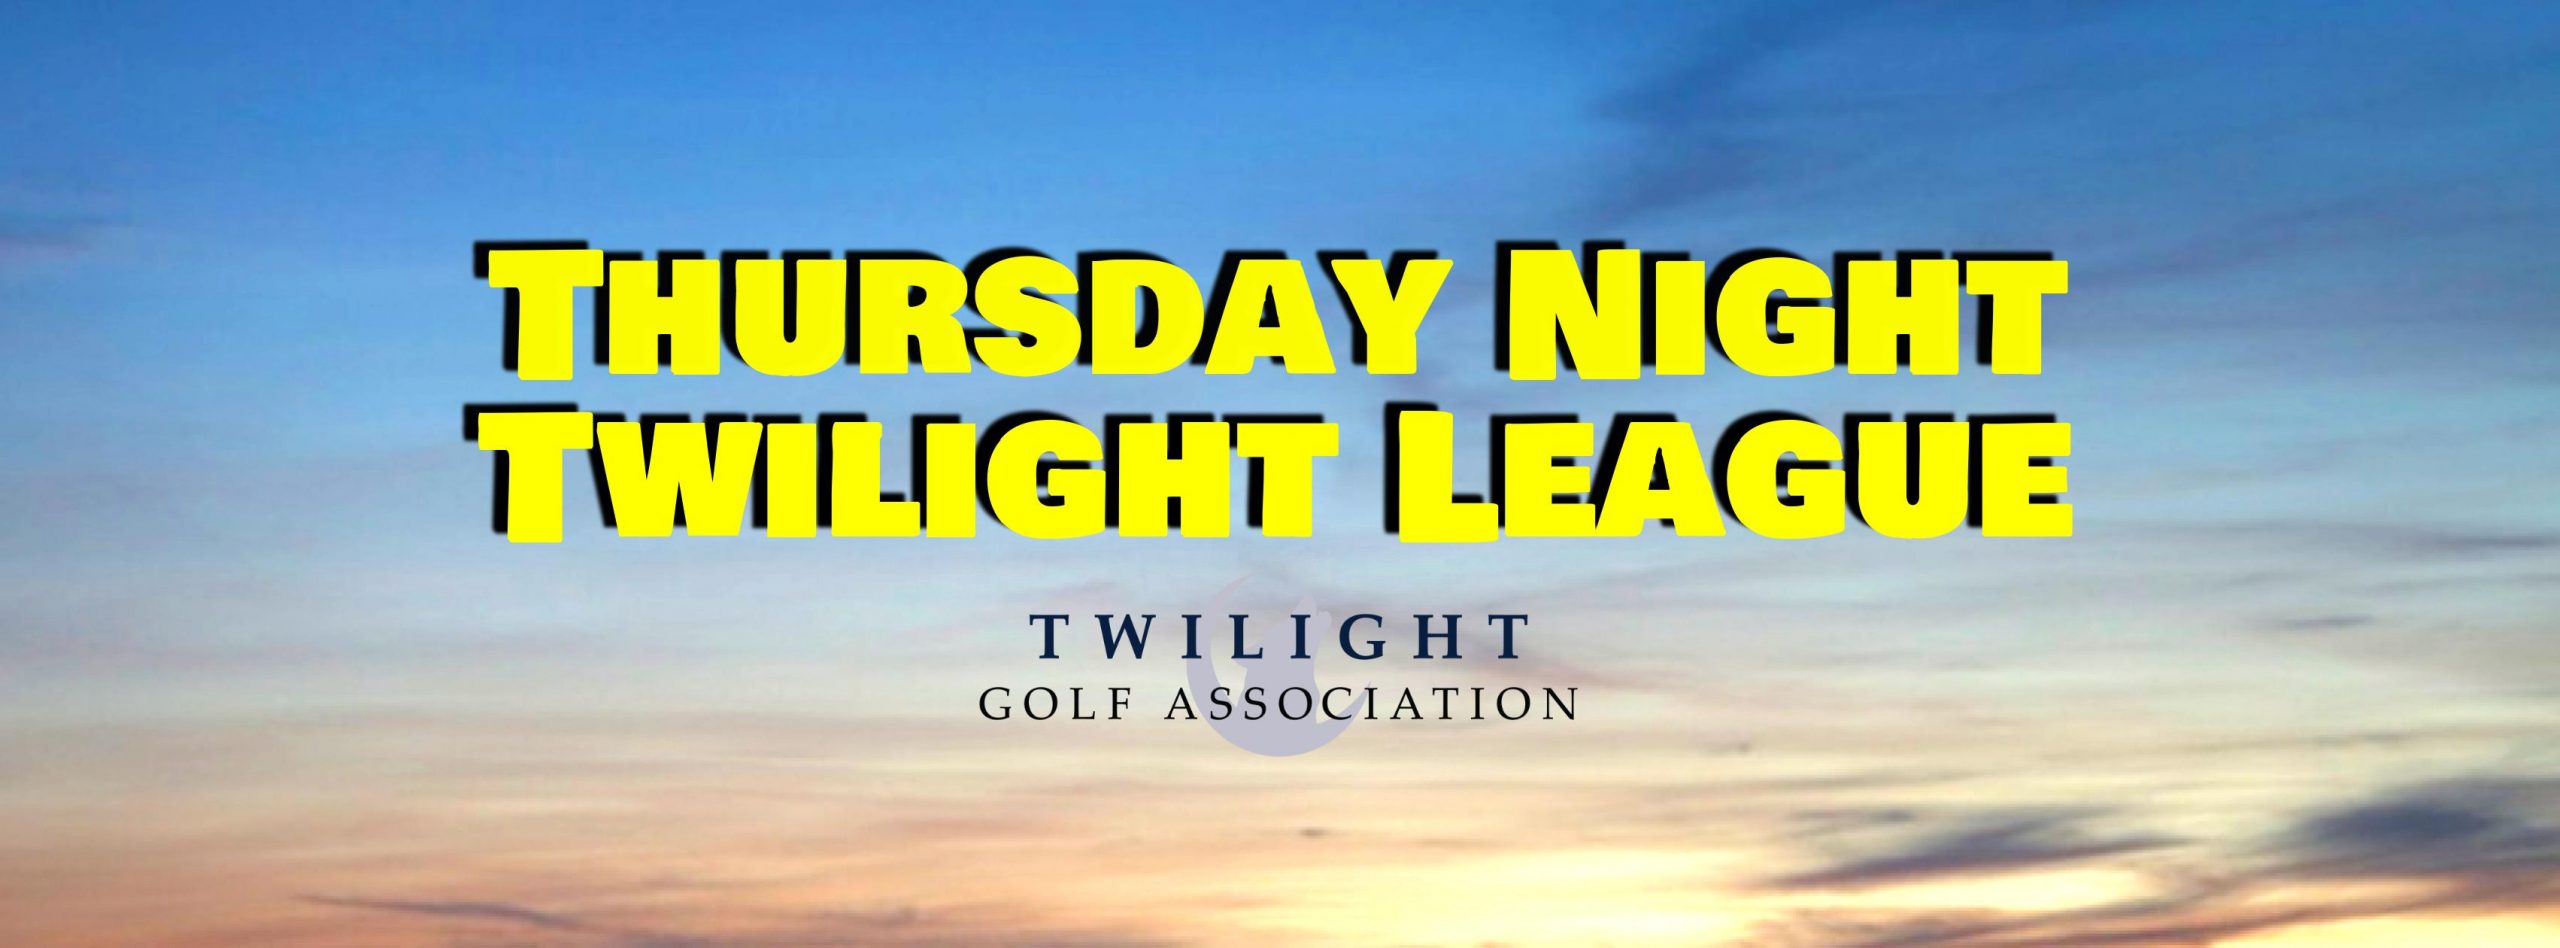 Thursday Twilight League at White Plains Golf Course